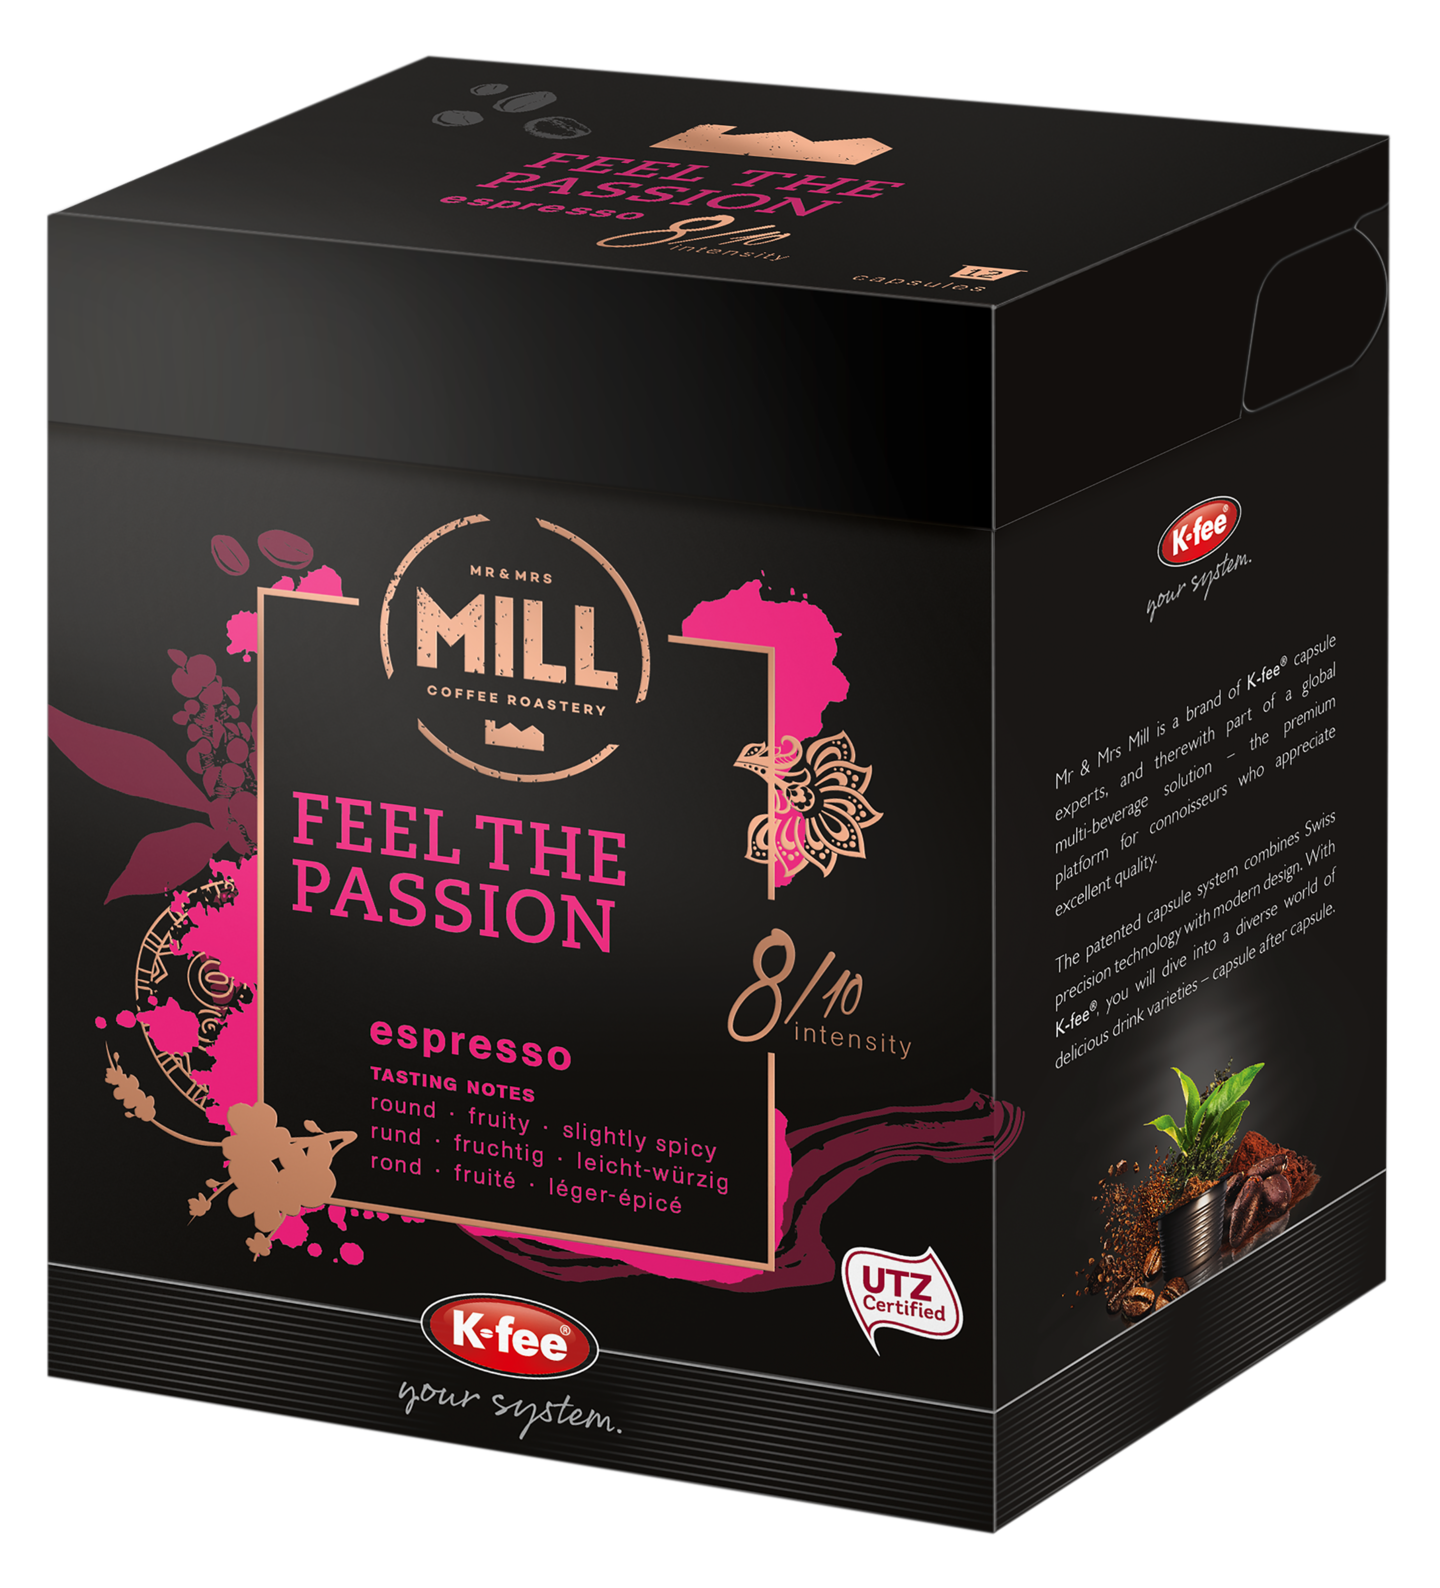 K-fee Mr & Mrs Mill Feel The Passion espresso kahvikapseli 12kpl RFA